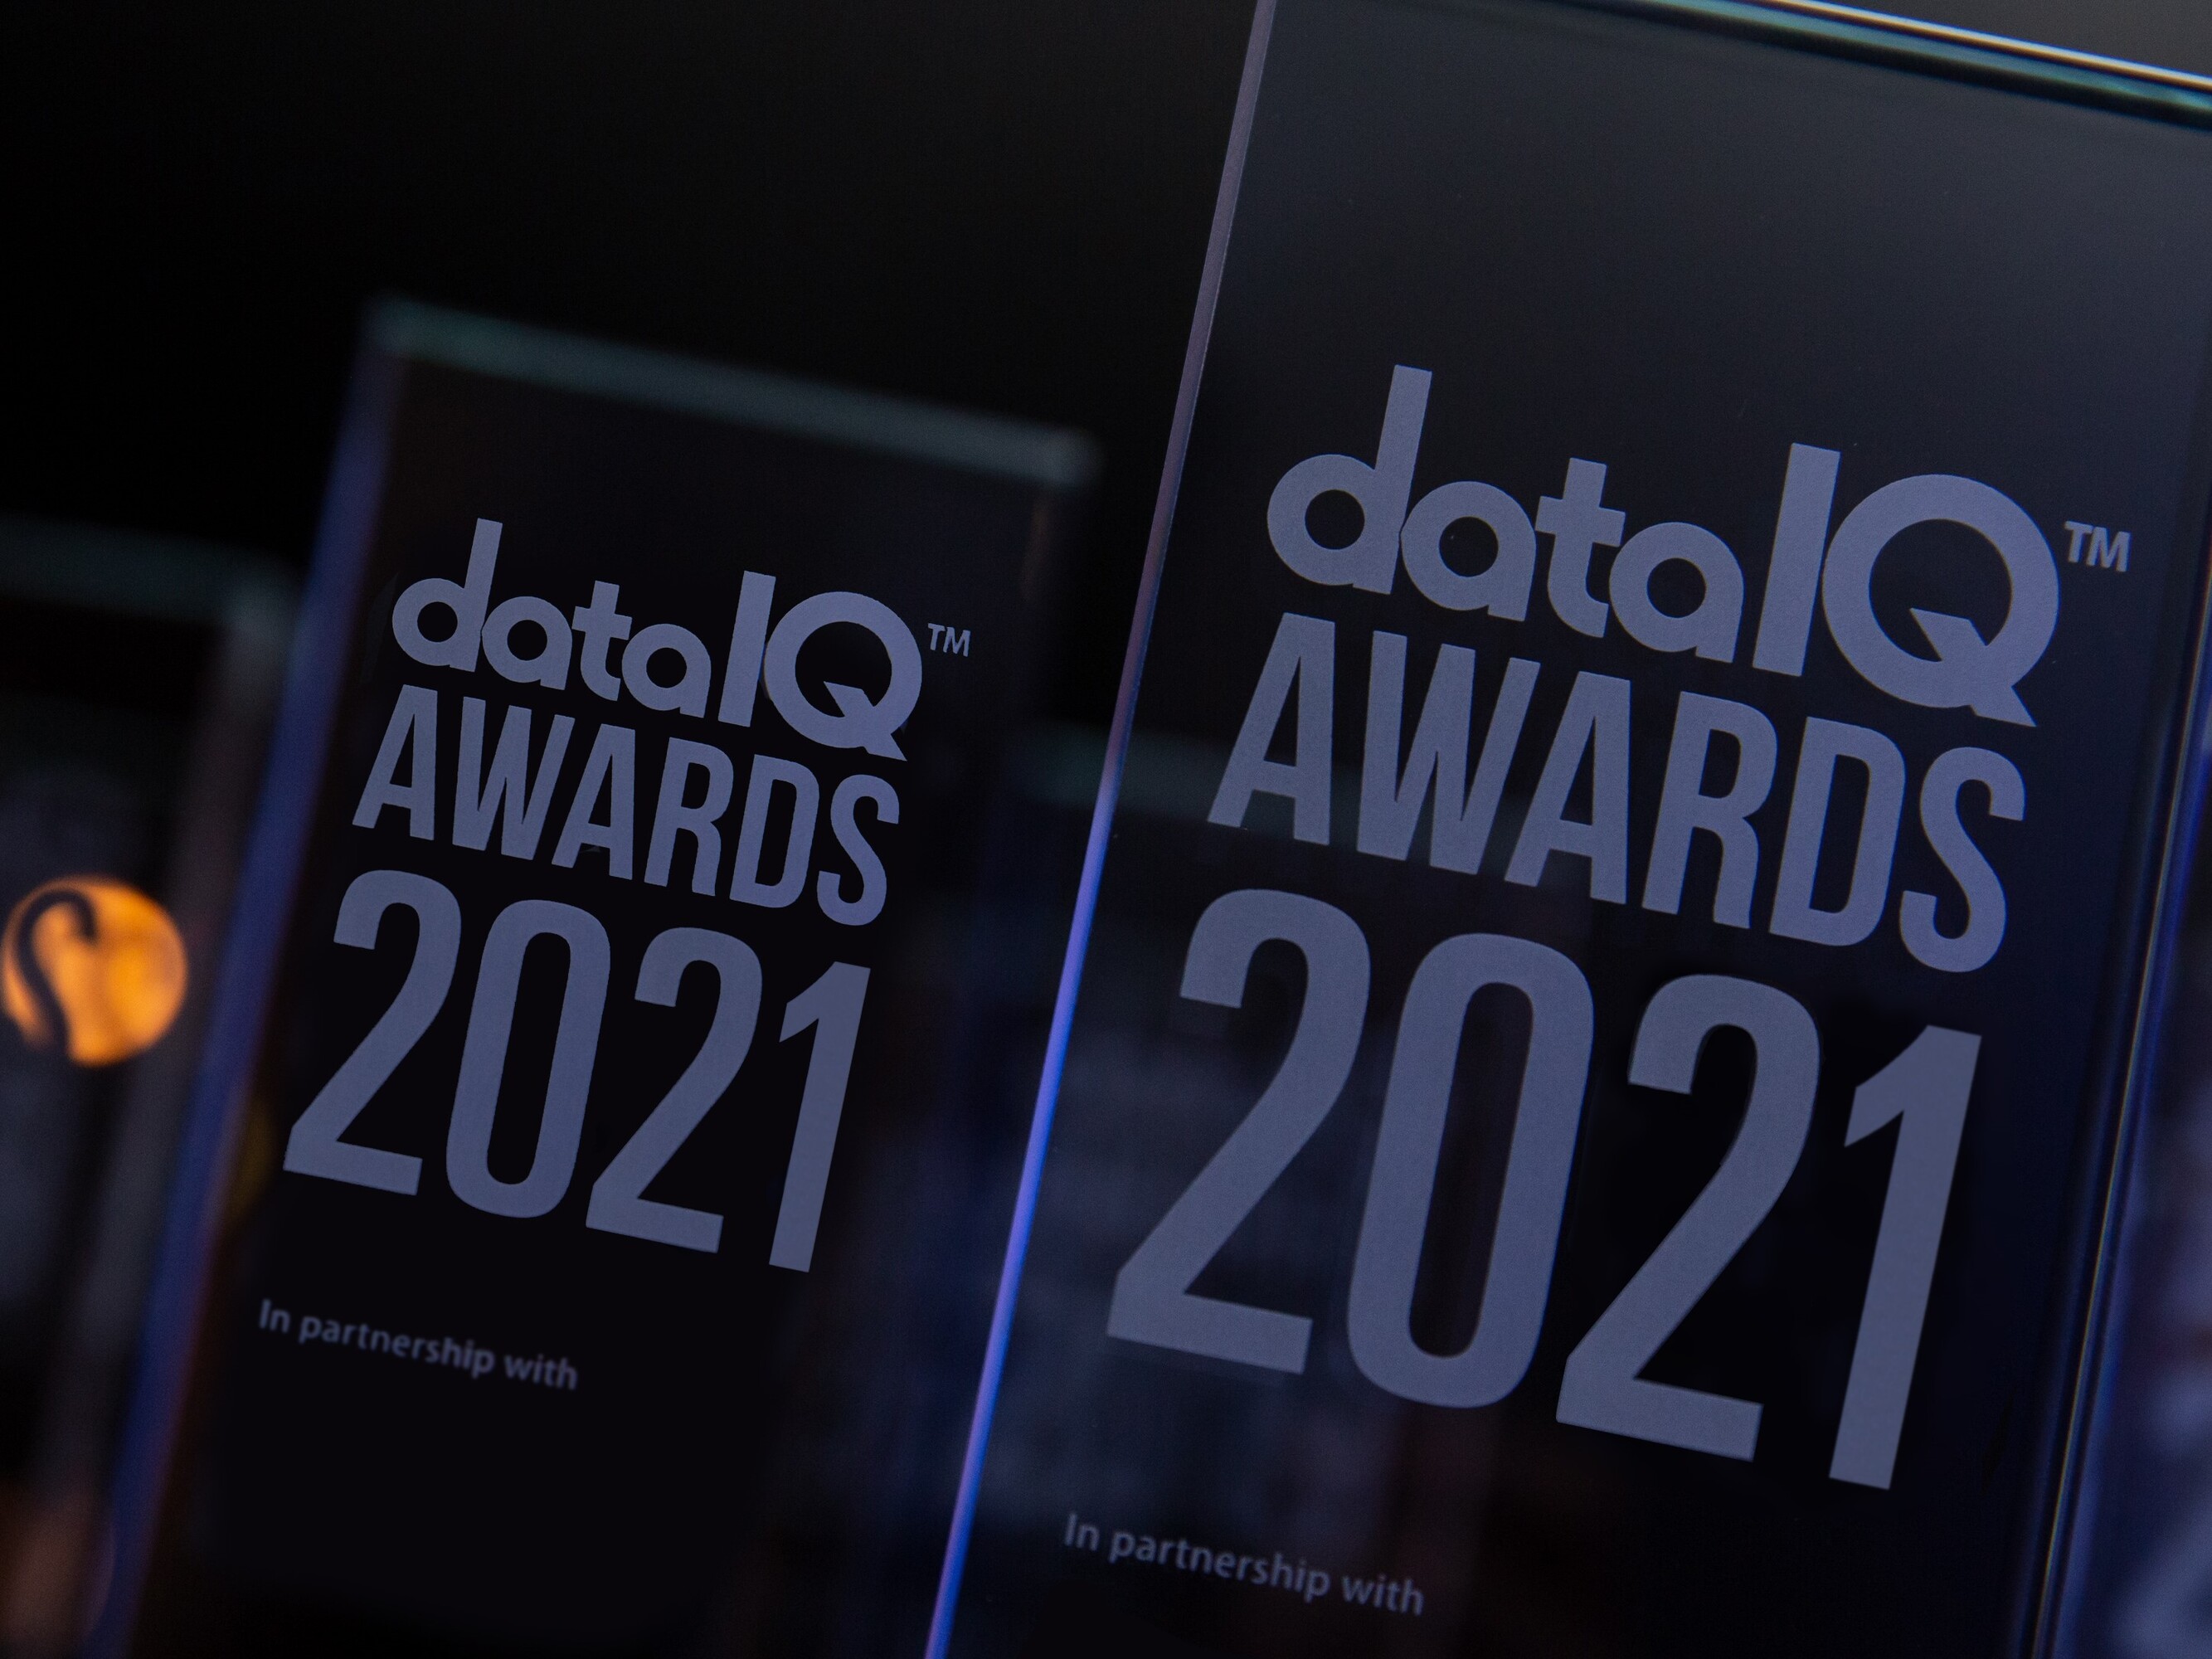 DataIQ DataIQ Awards 2021 Features Drive Awareness